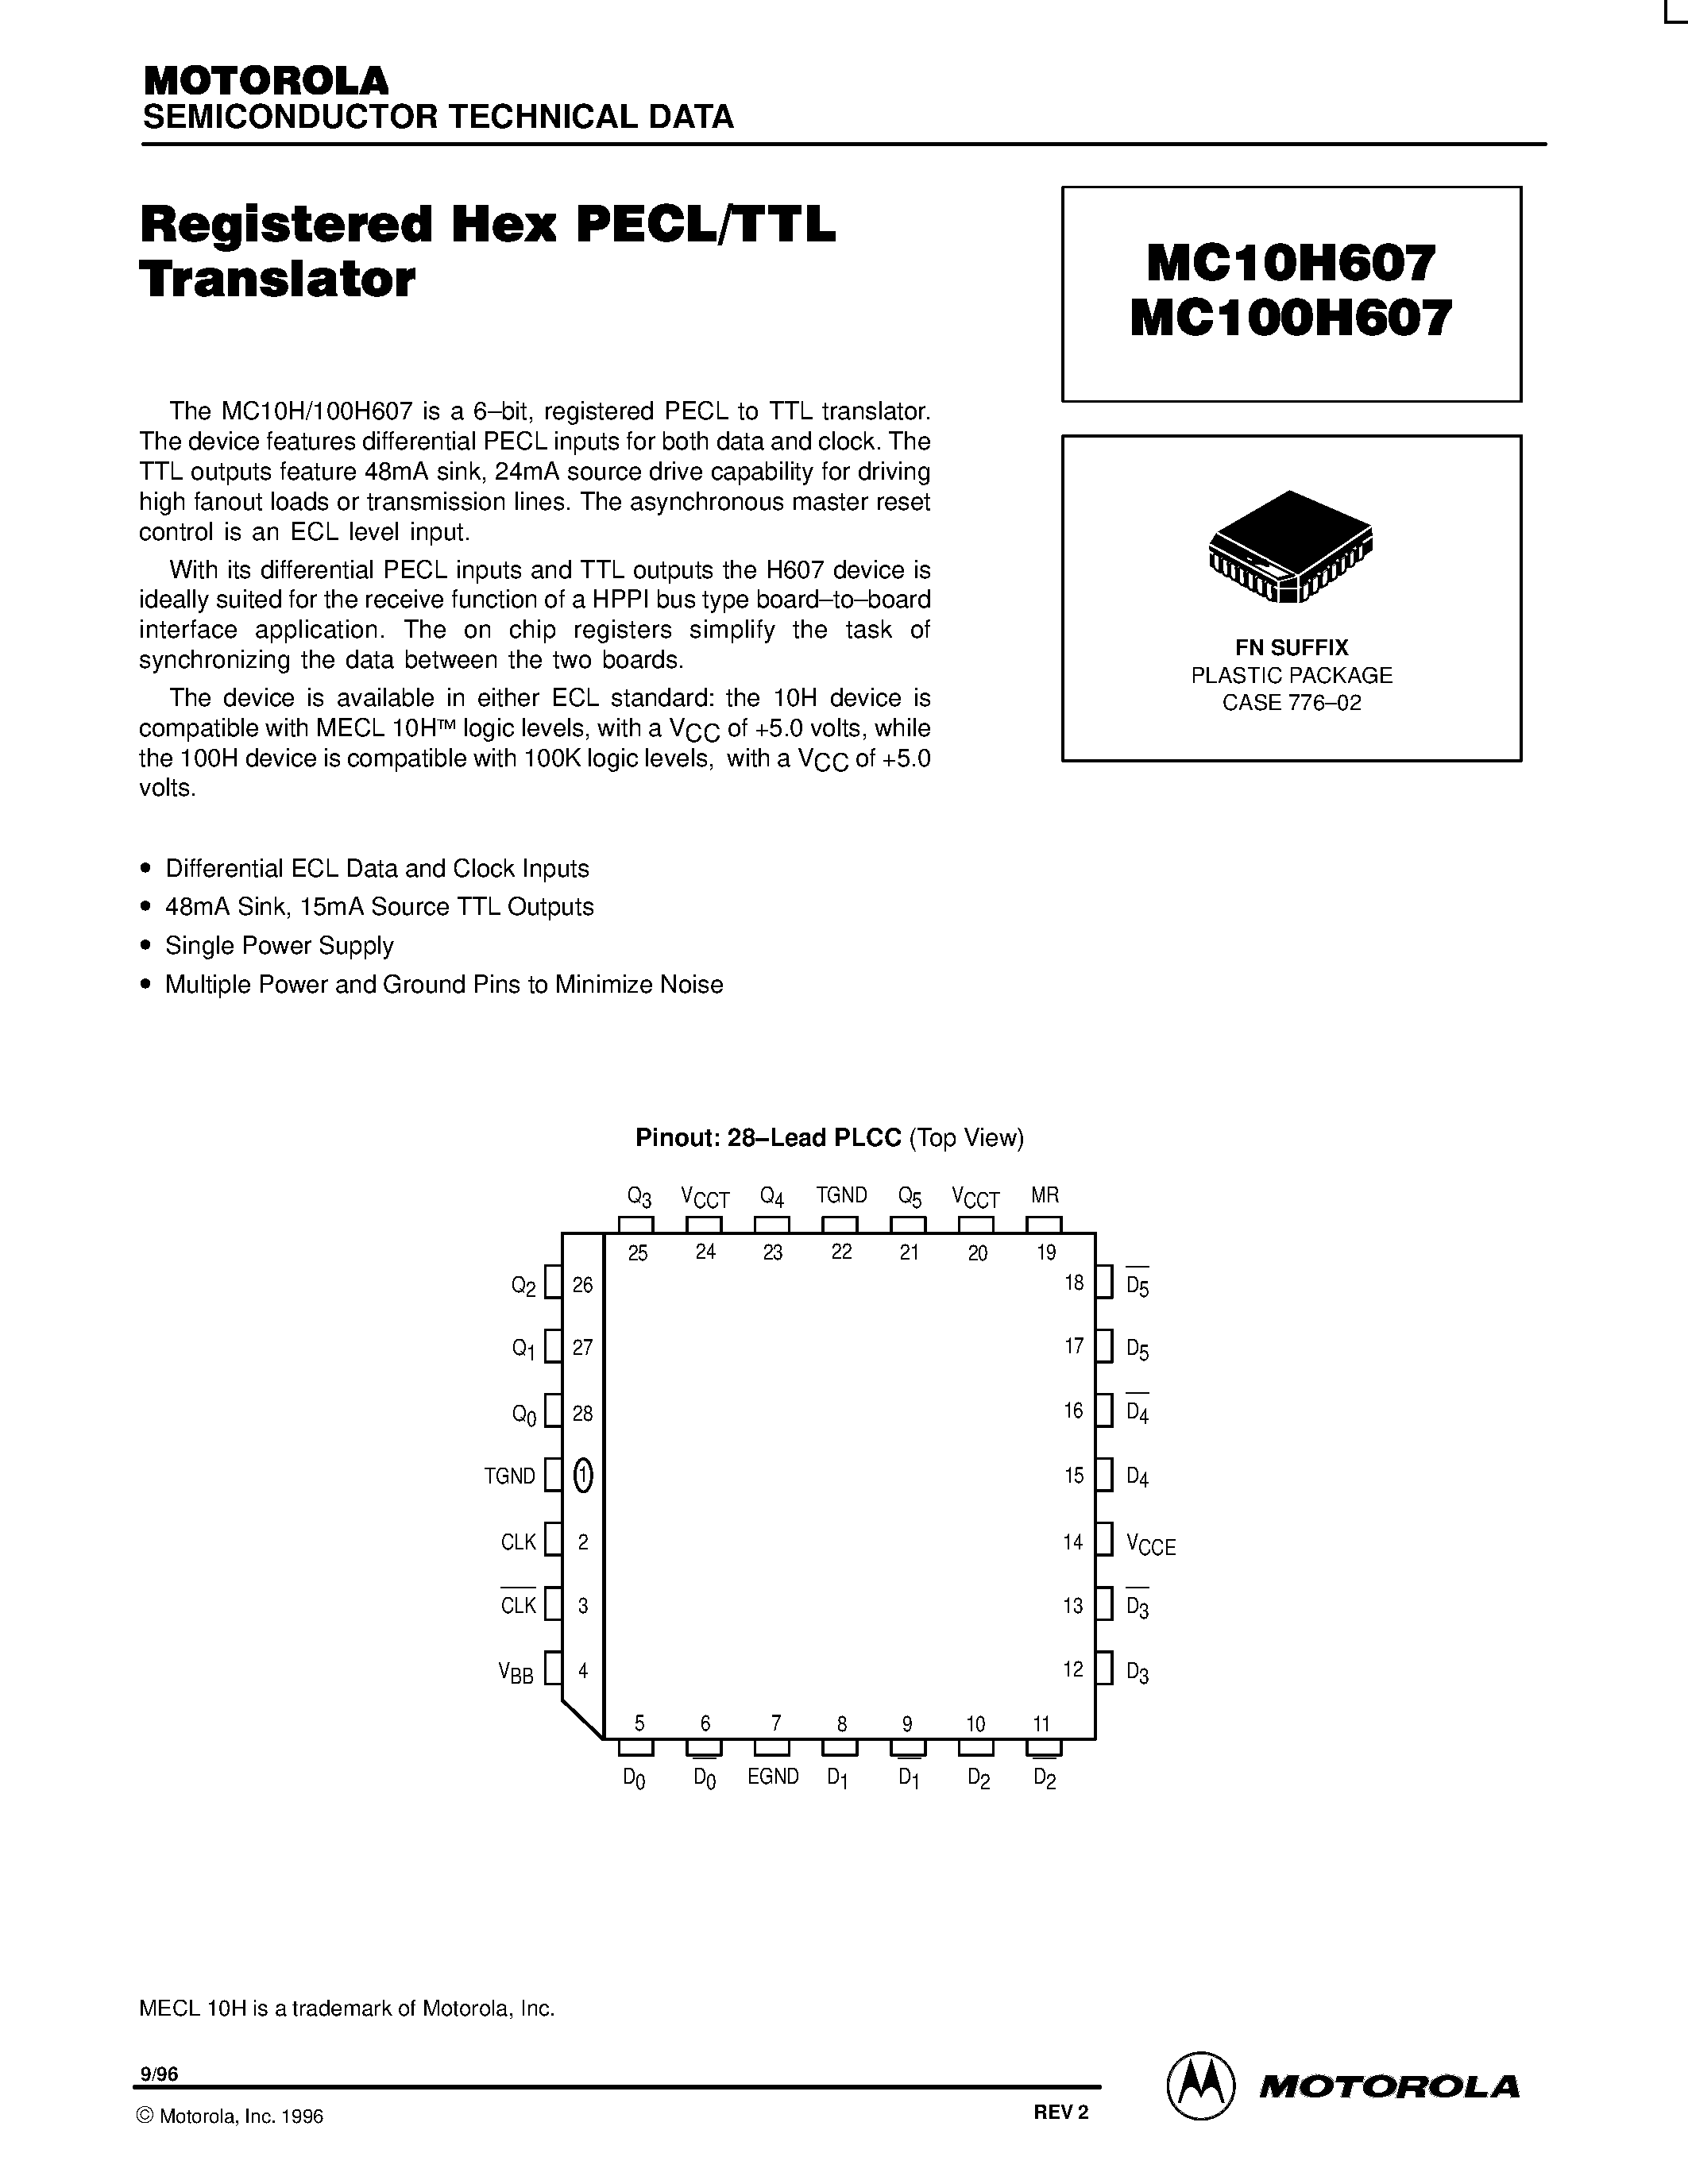 Даташит MC10H607FN - Registered Hex PECL/TTL Translator страница 1